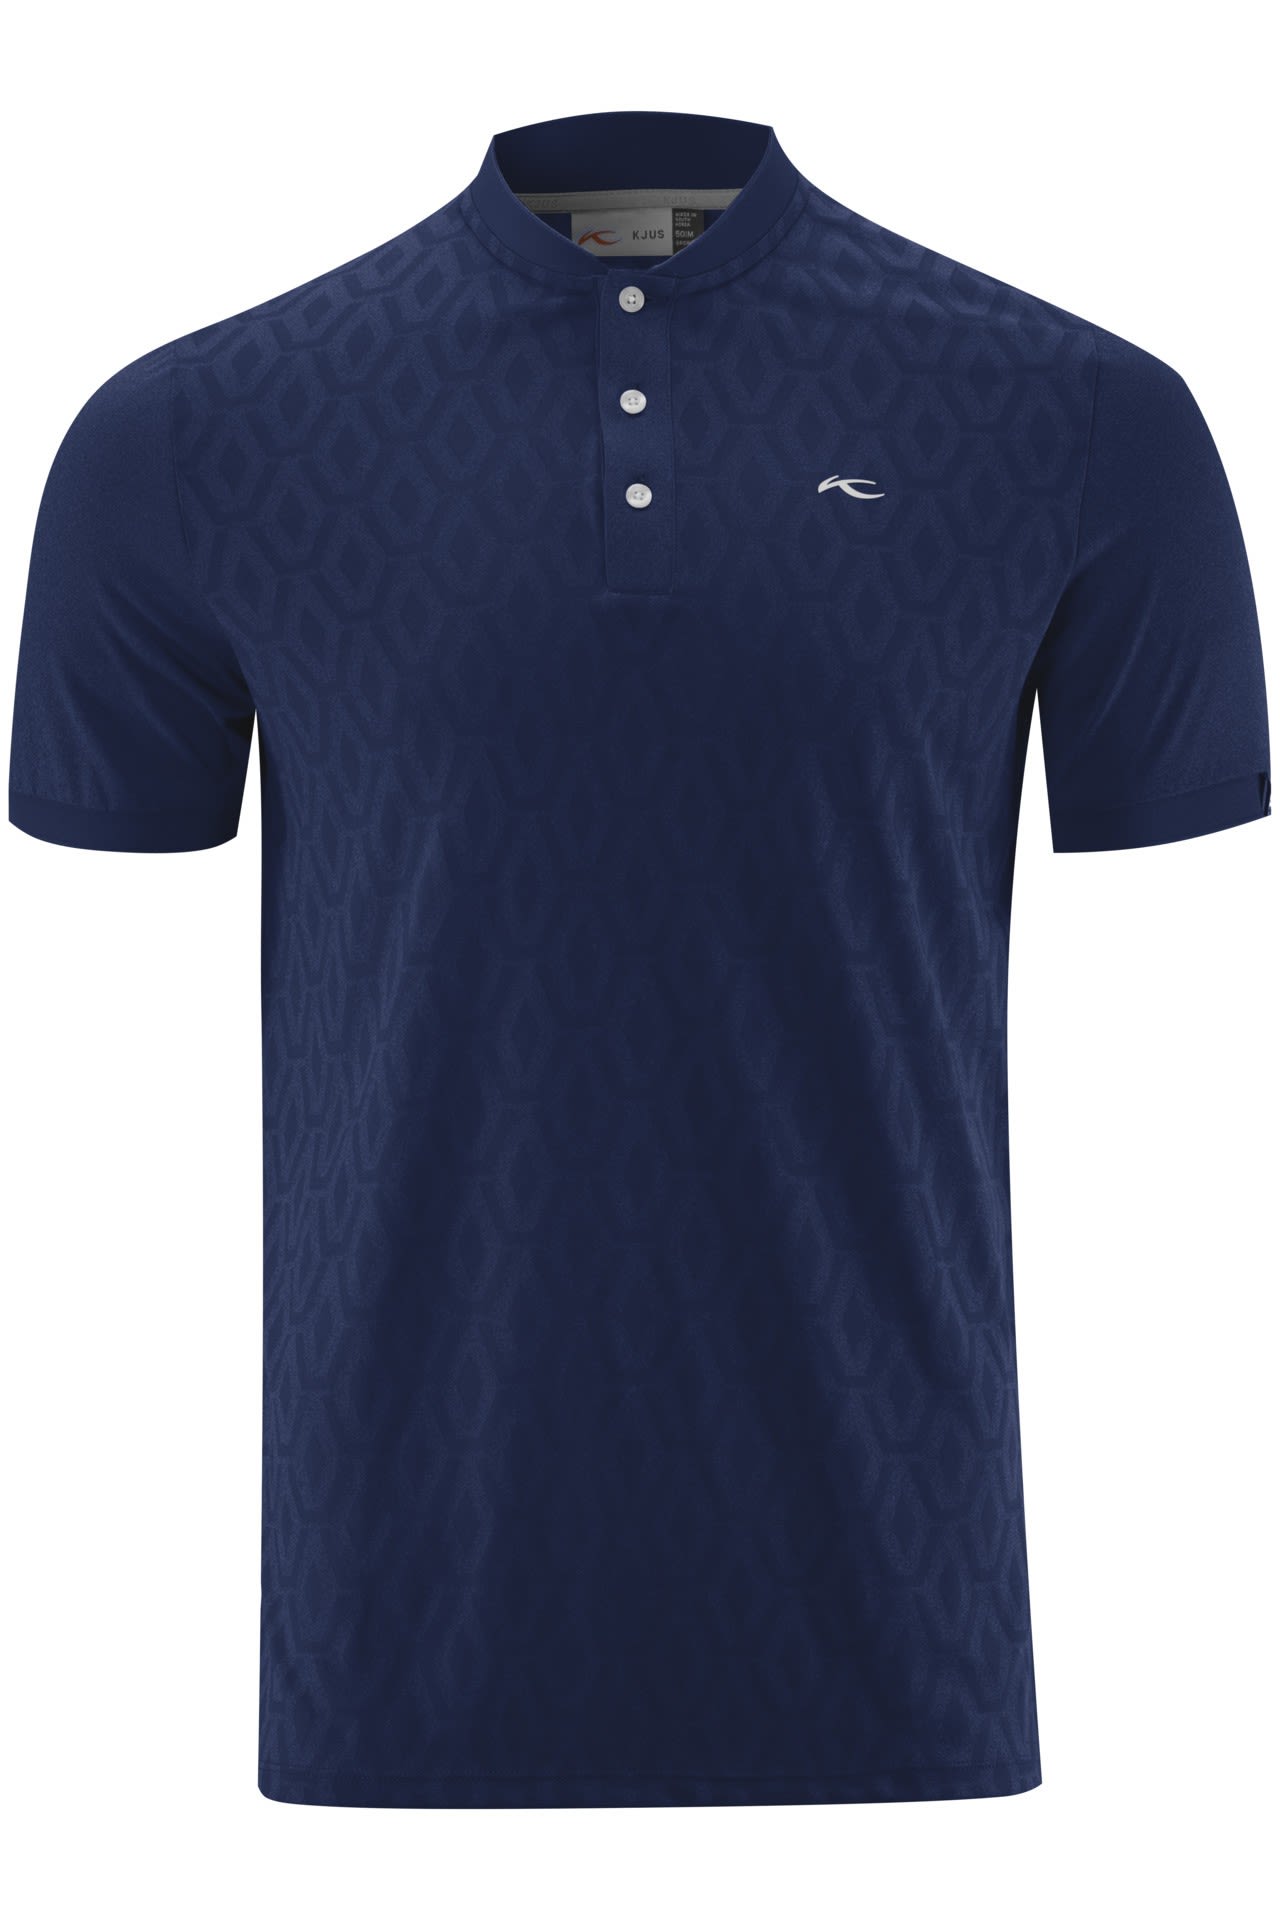 Kjus Technisches modernes Herren Polo Shirt Atlanta Blue Melange